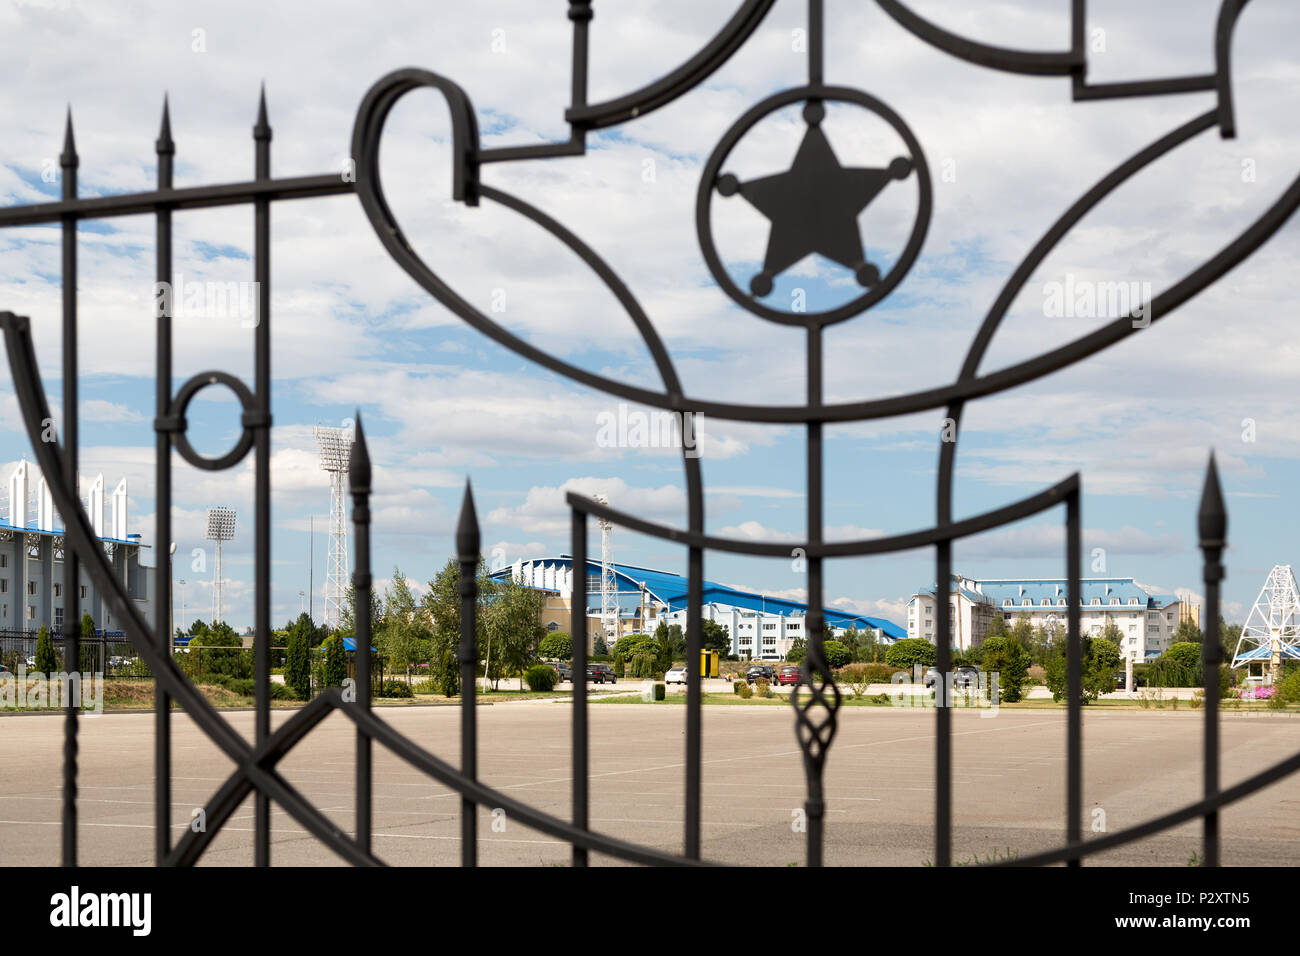 25.08.2016, Tiraspol, Transnistria Moldova - lo sceriffo complesso sportivo, con due stadi di calcio, è parte del gruppo multiculturale sceriffo, la Foto Stock